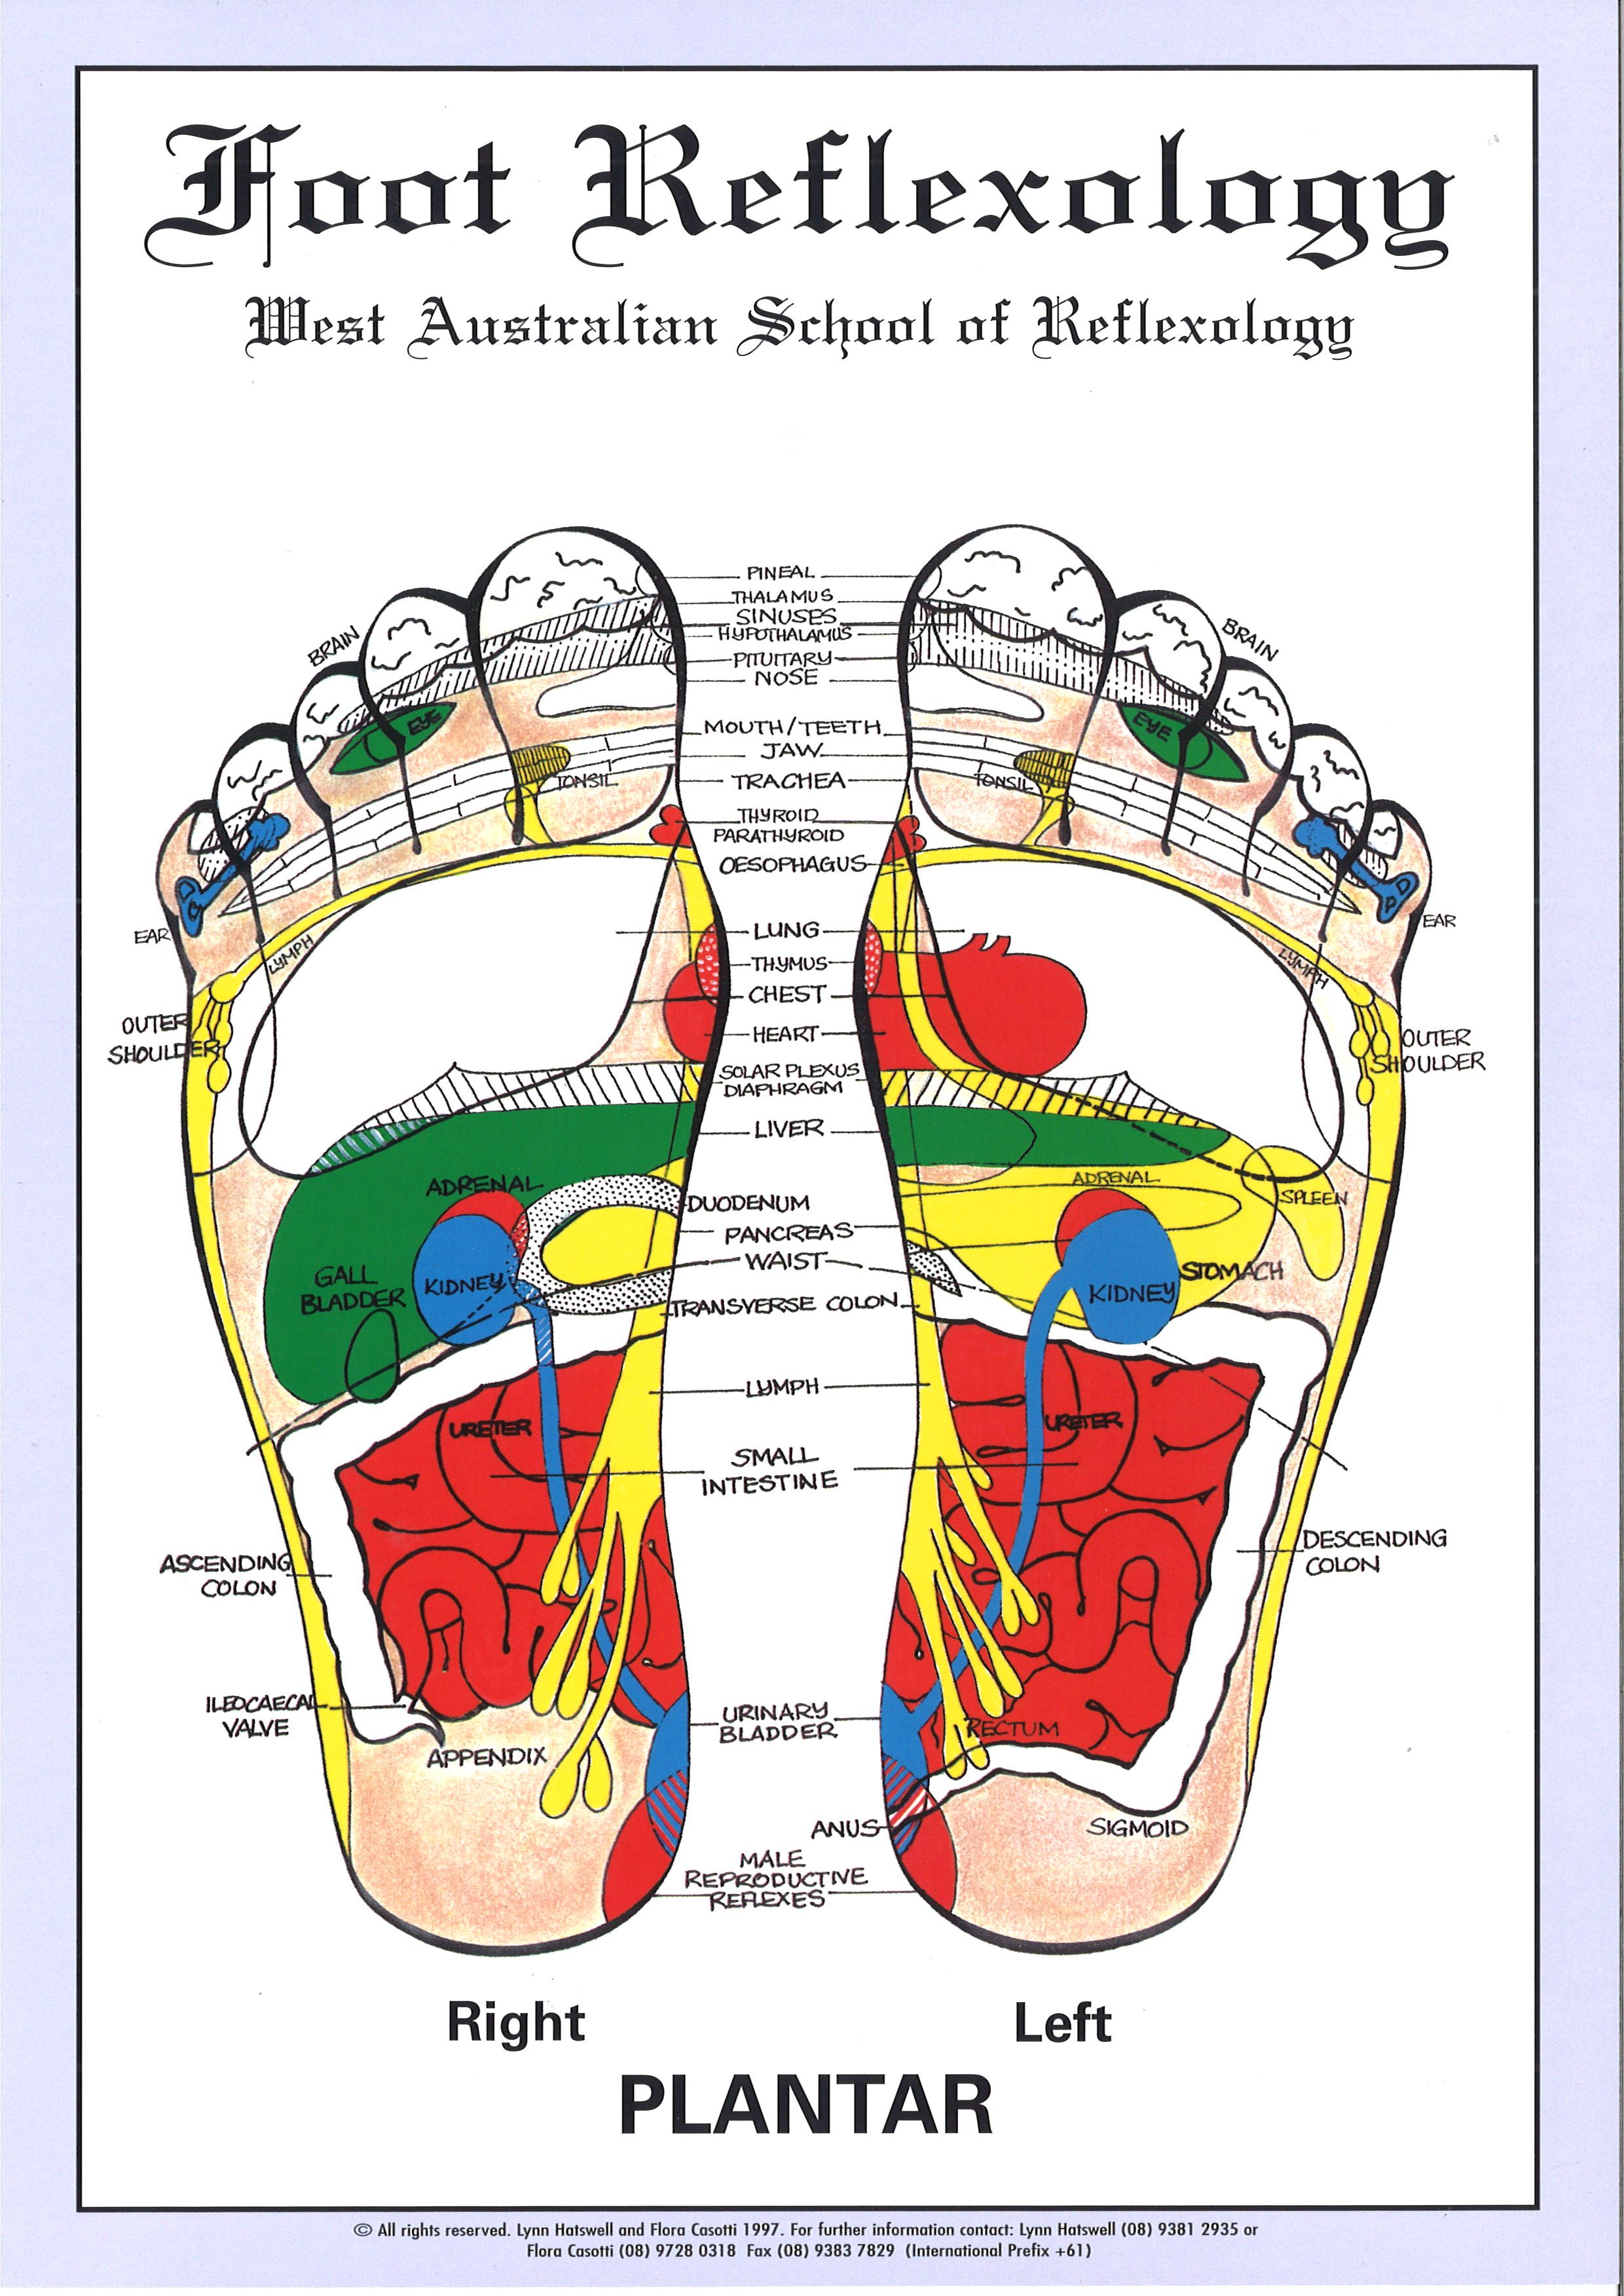 WA School of Reflexology Foot Chart A4 Size